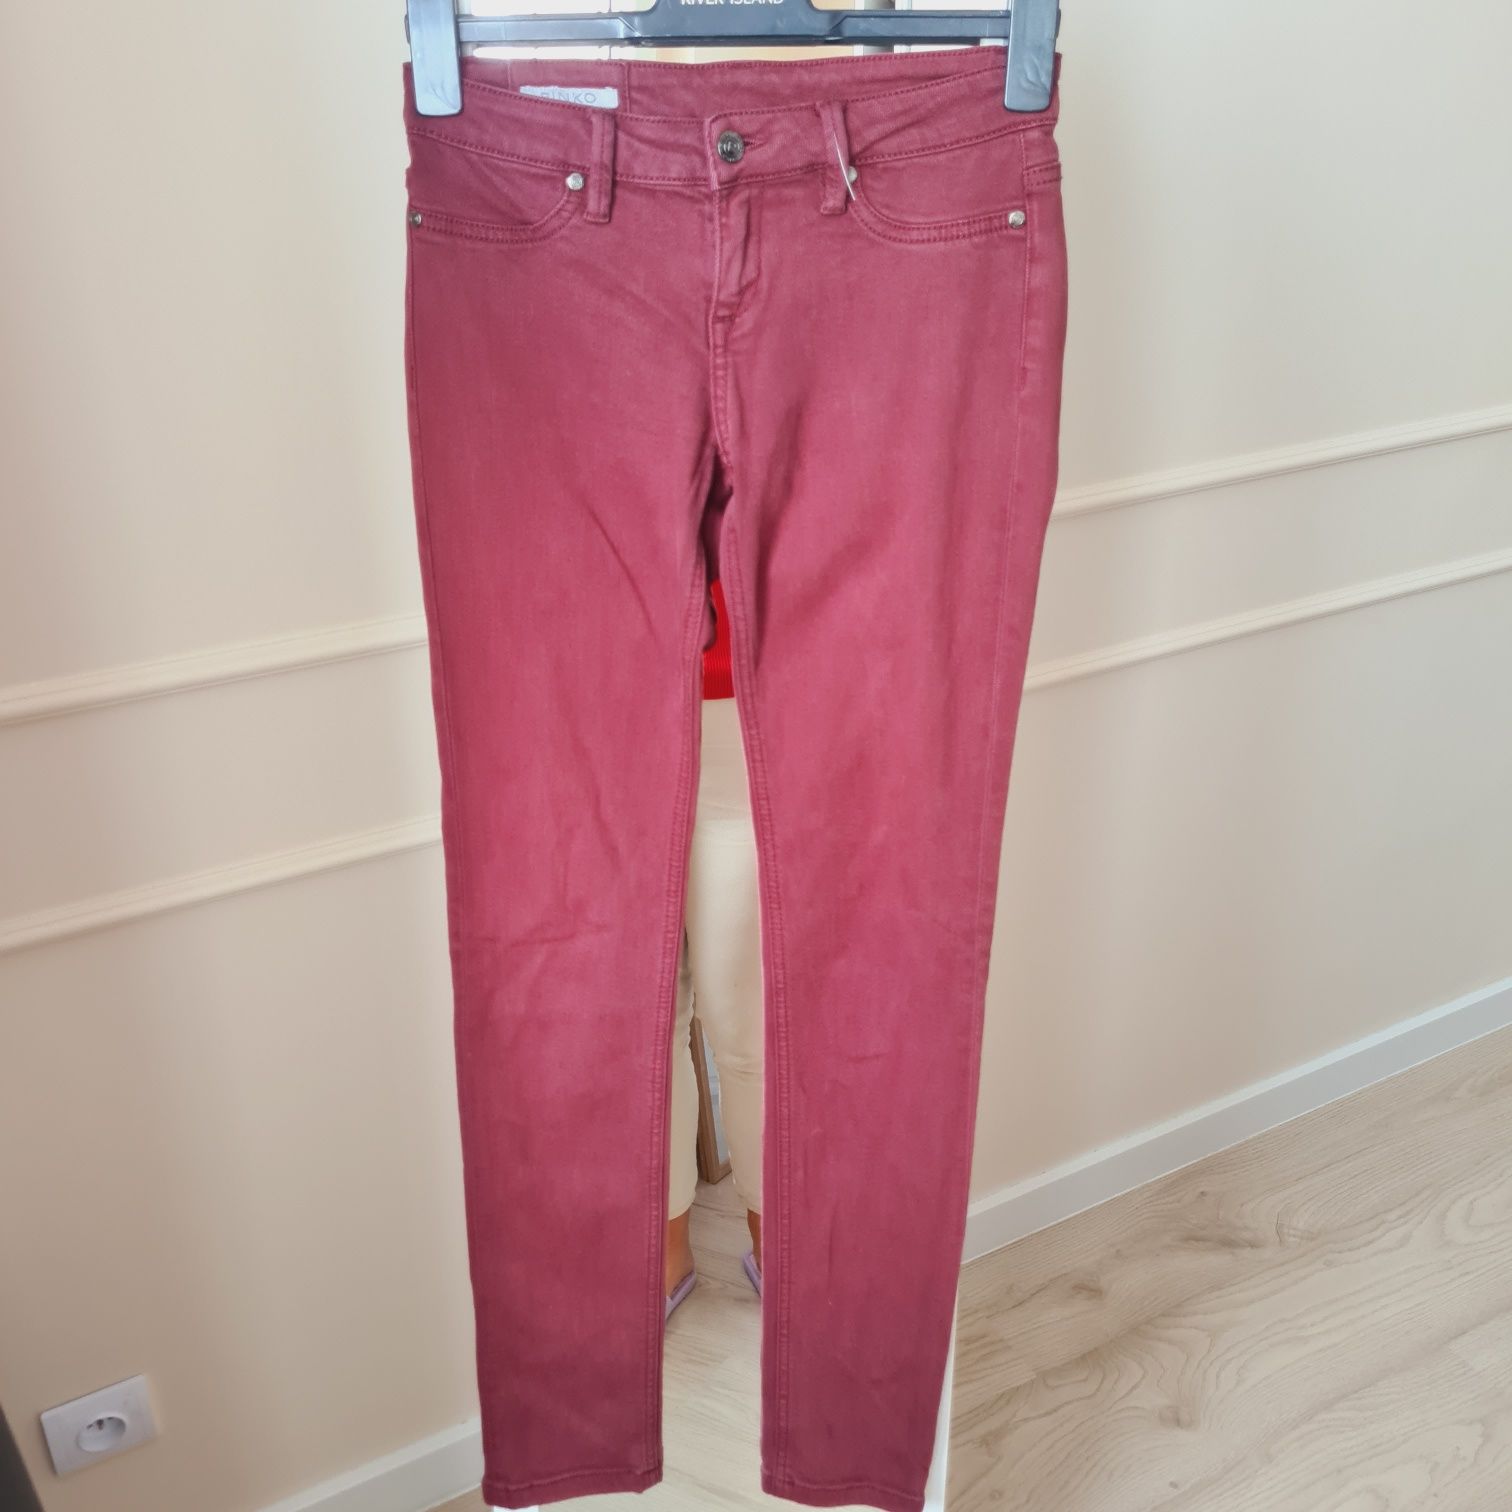 Burgundowe spodnie dzinsowe od Pinko. R 27